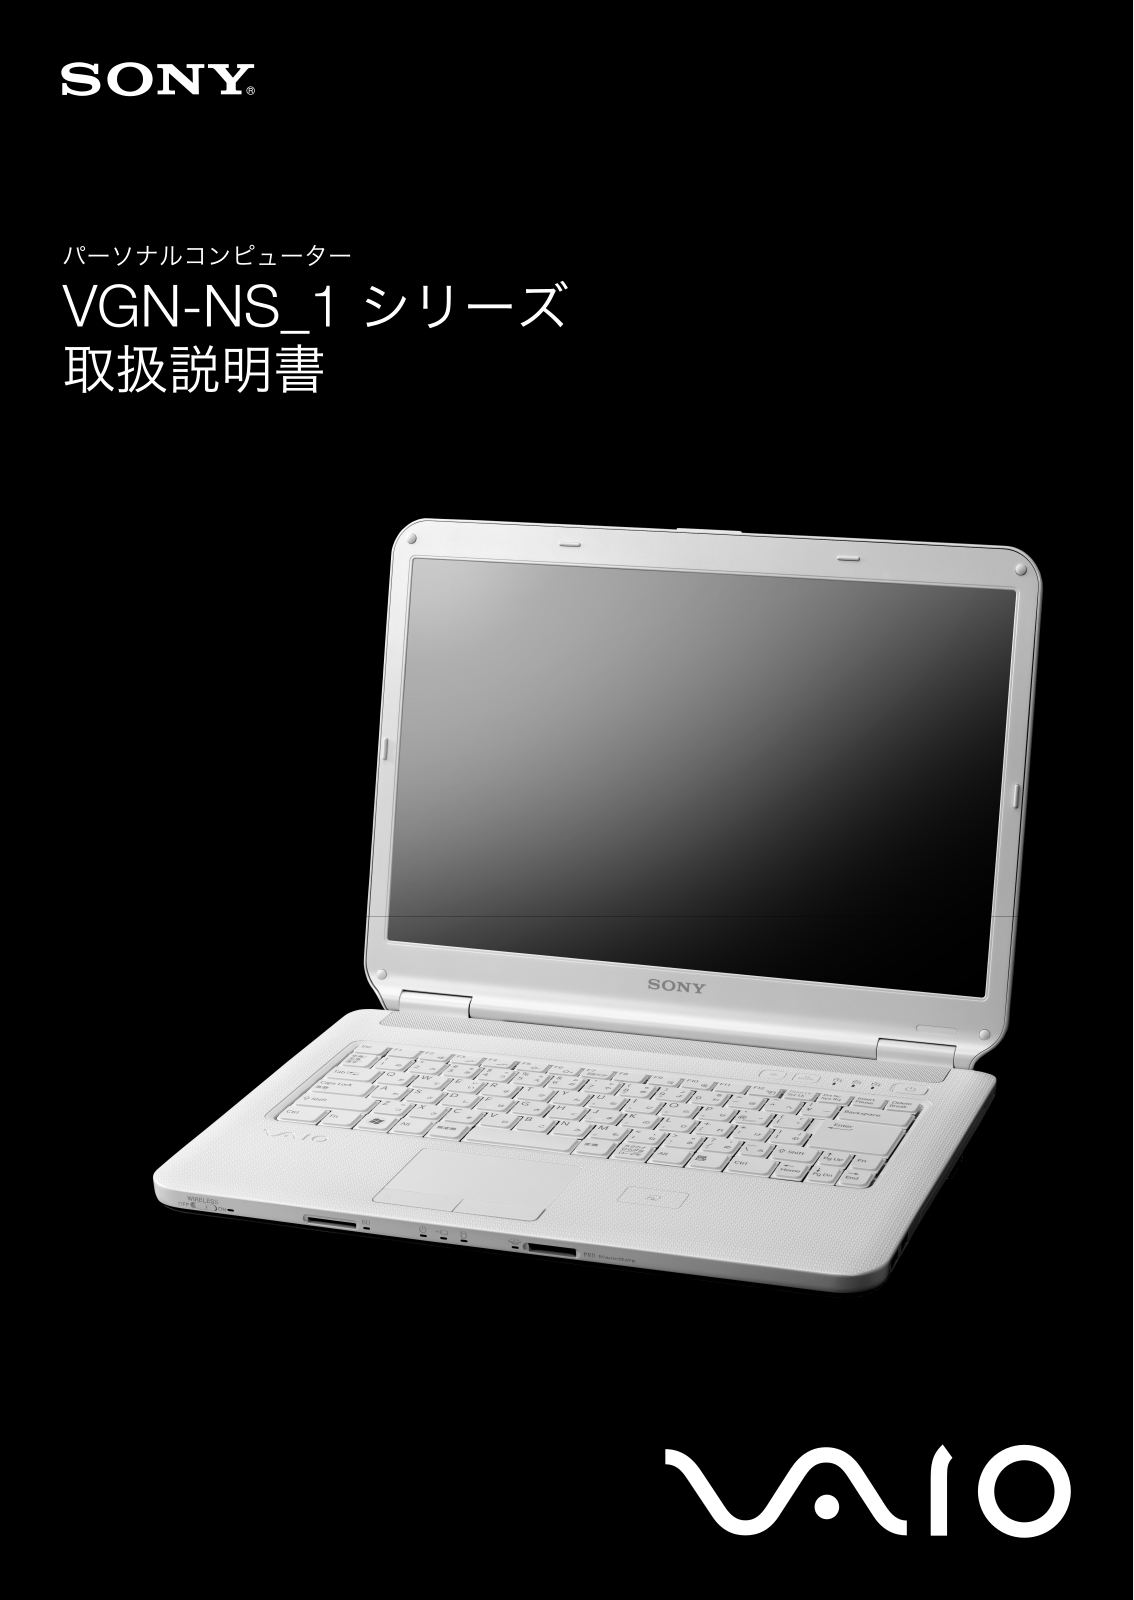 Sony VAIO VGN-NS51B/P, VAIO VGN-NS51B/L, VAIO VGN-NS51B/W, VAIO VGN-NS71B/W User Manual